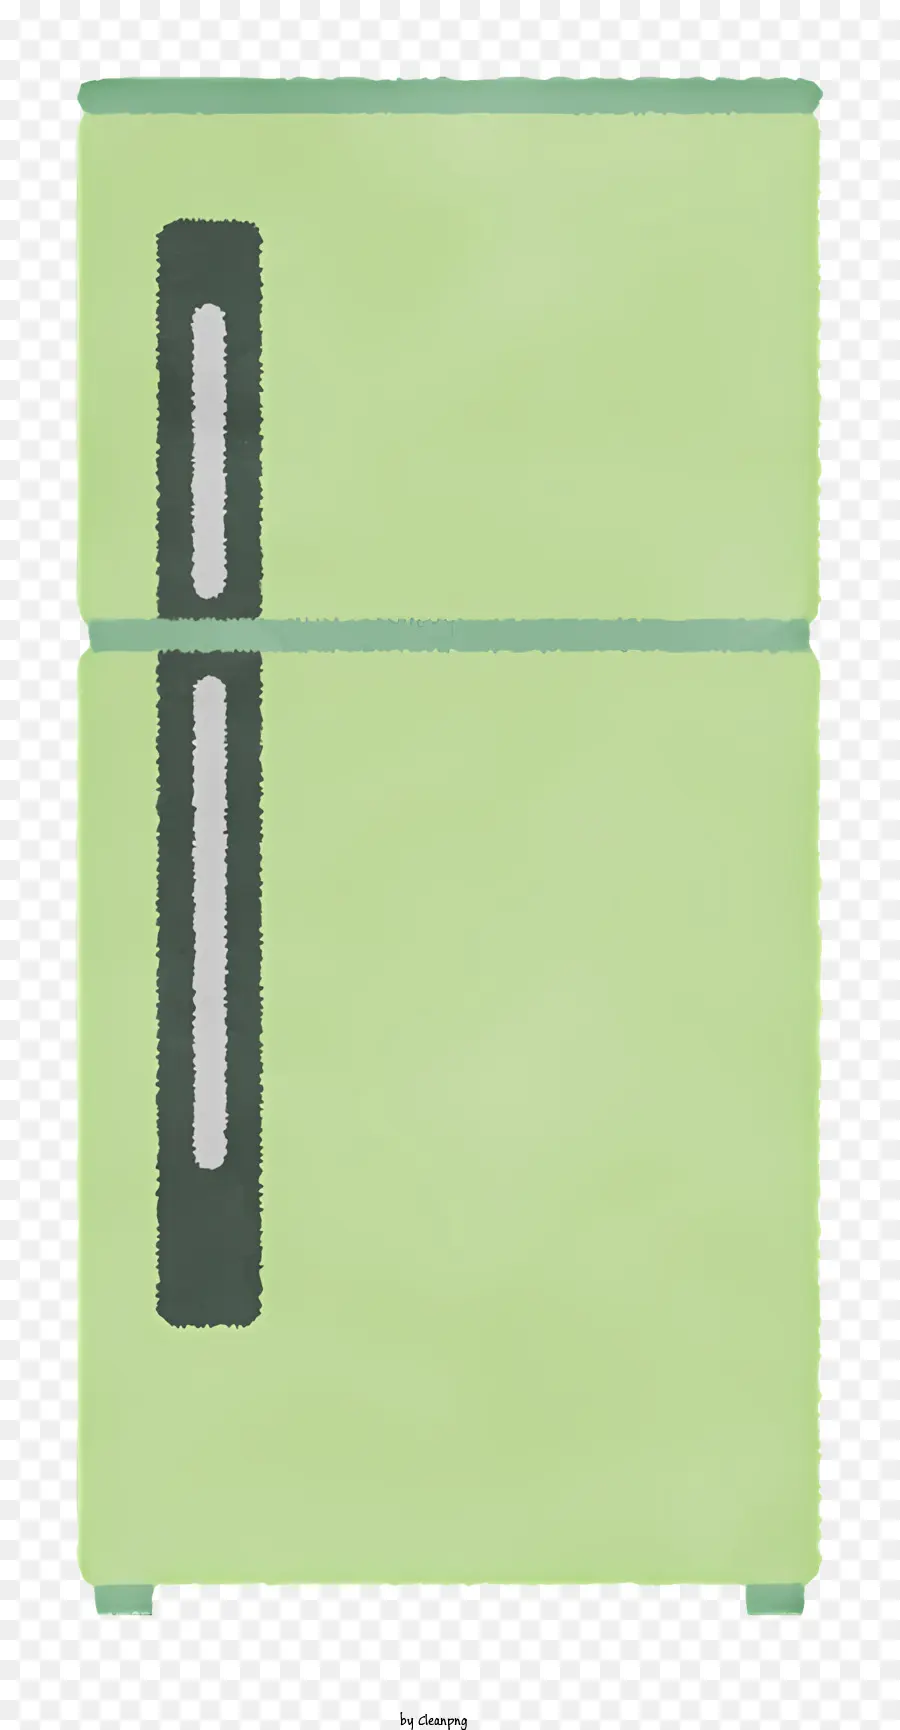 biểu tượng tủ lạnh màu xanh lá cây bằng thép không gỉ cửa nhỏ gọn các tấm lõm - Hình ảnh: Tủ lạnh màu xanh lá cây nhỏ gọn với cửa thép không gỉ